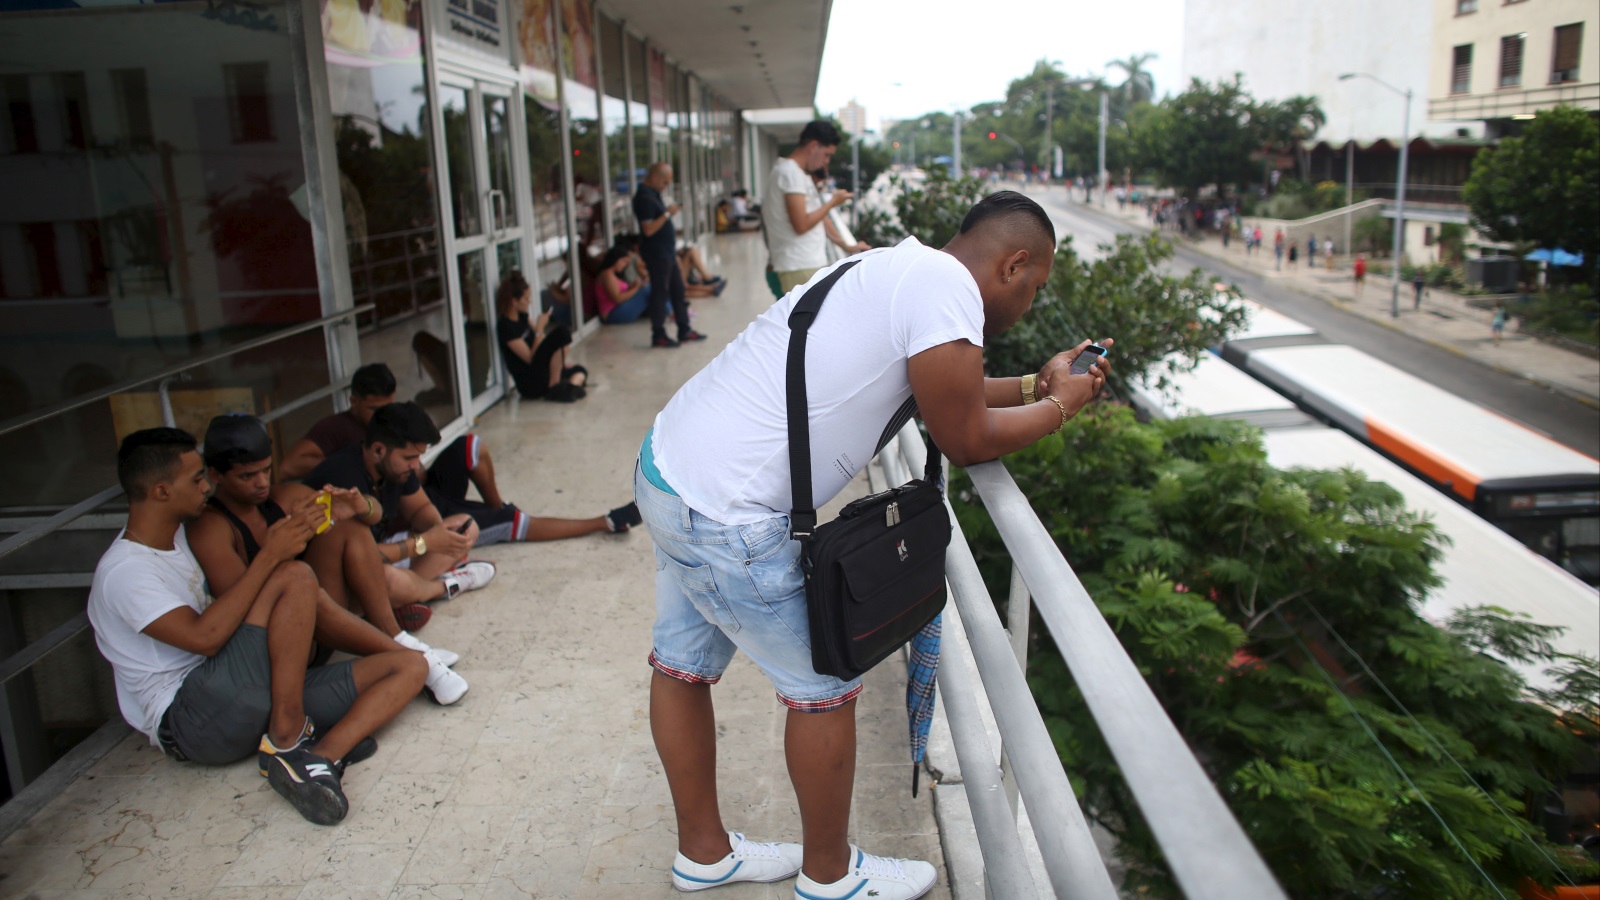 ‪شباب في العاصمة الكوبية هافانا يطالعون هواتفهم في مكان مغطى بشبكة الواي فاي‬ (رويترز)